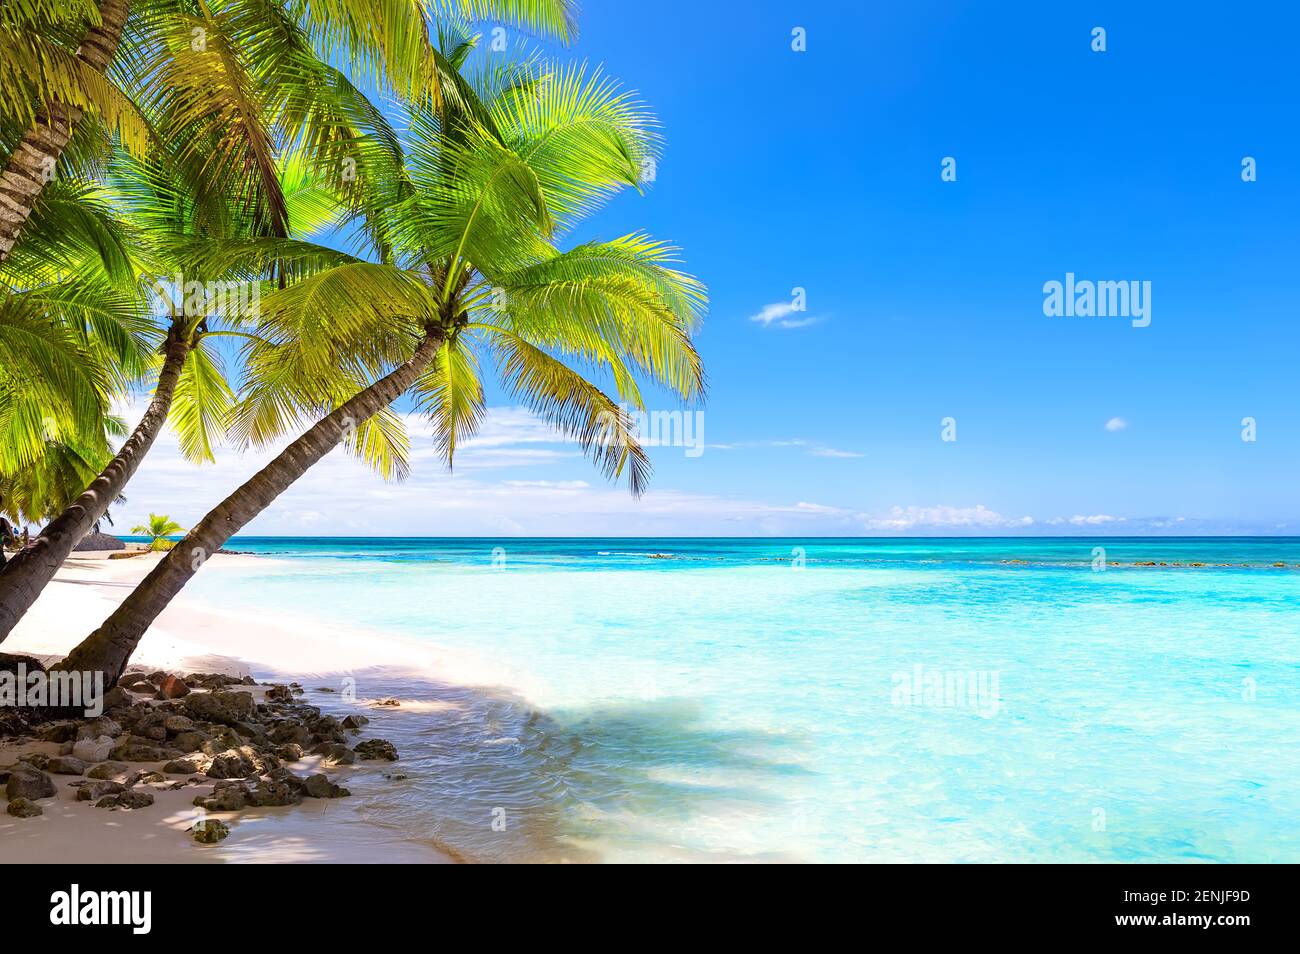 Kokospalmen am weißen Sandstrand in Punta Cana, Dominikanische Republik. Urlaub Urlaub Urlaub Hintergrund Wallpaper. Blick auf den schönen tropischen Strand. Stockfoto